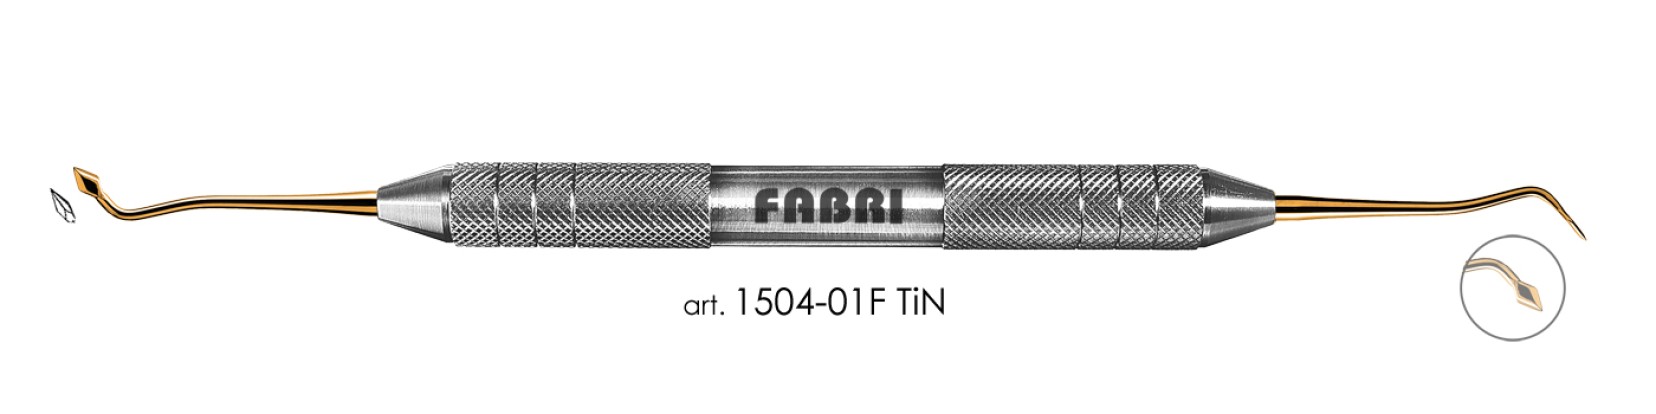 ФАБРИ Fabri  - Инструмент для моделирования (арт. 1504 F TIN)